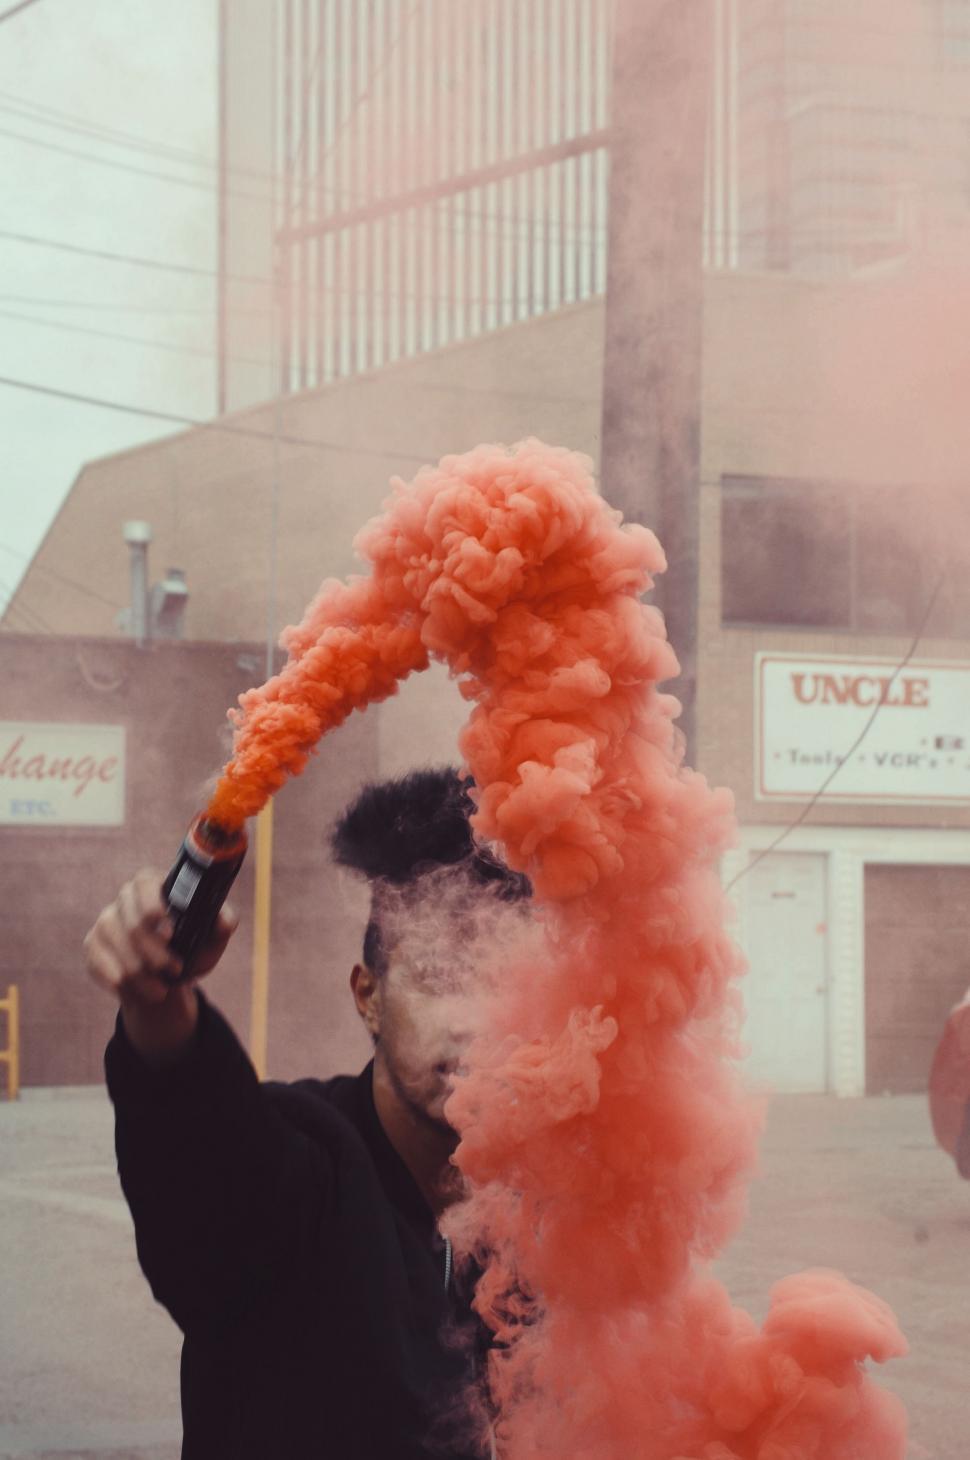 Free Image of Man Holding Pipe Emitting Orange Smoke 